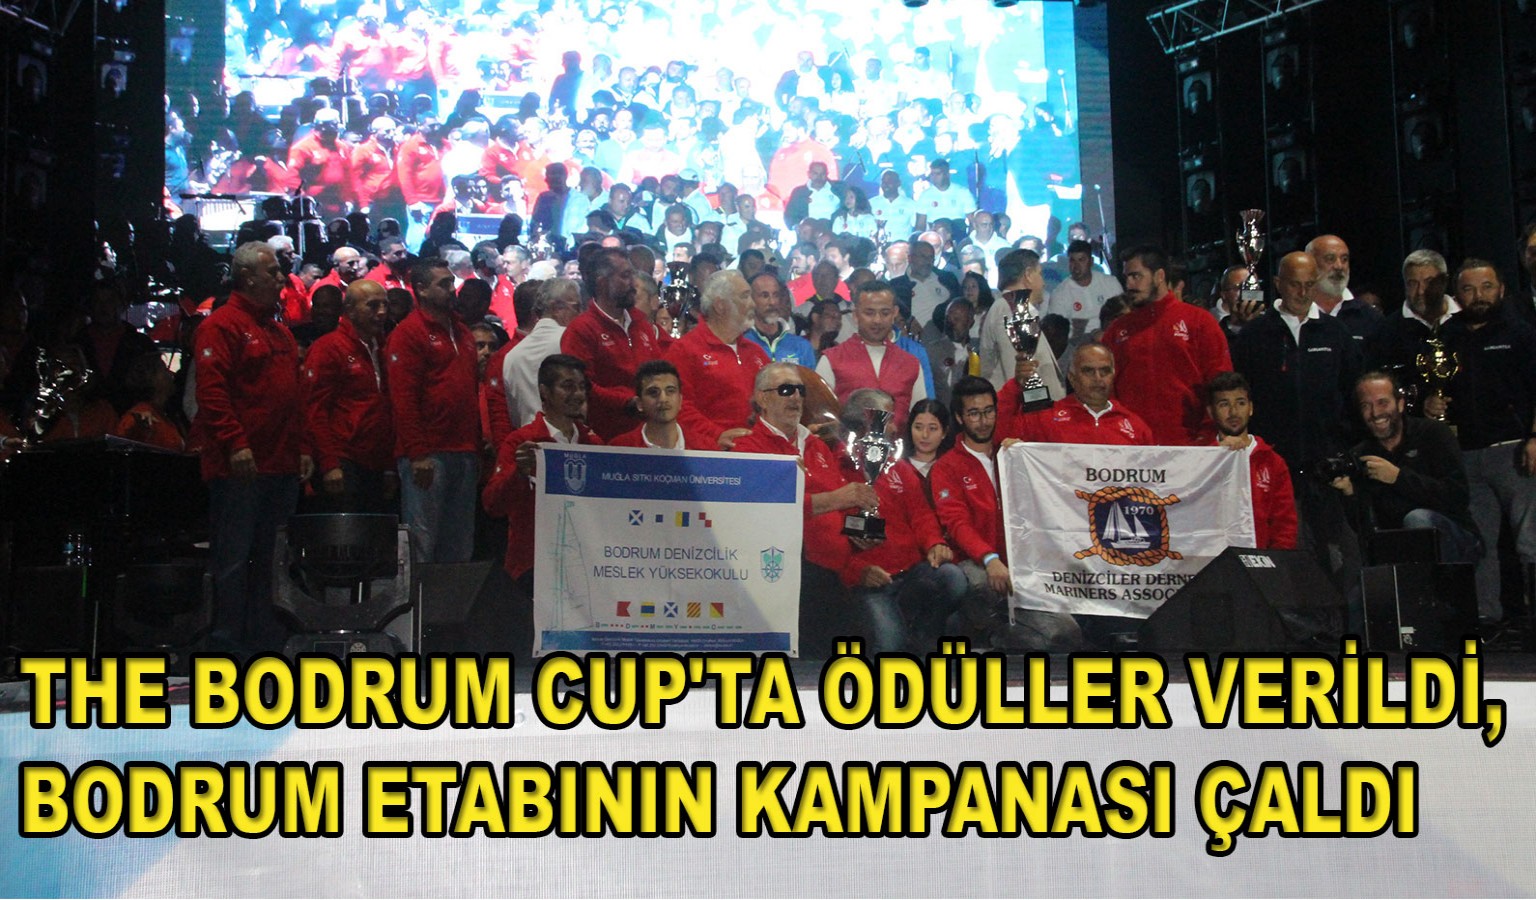 THE BODRUM CUP'TA ÖDÜLLER VERİLDİ, BODRUM ETABININ KAMPANASI ÇALDI